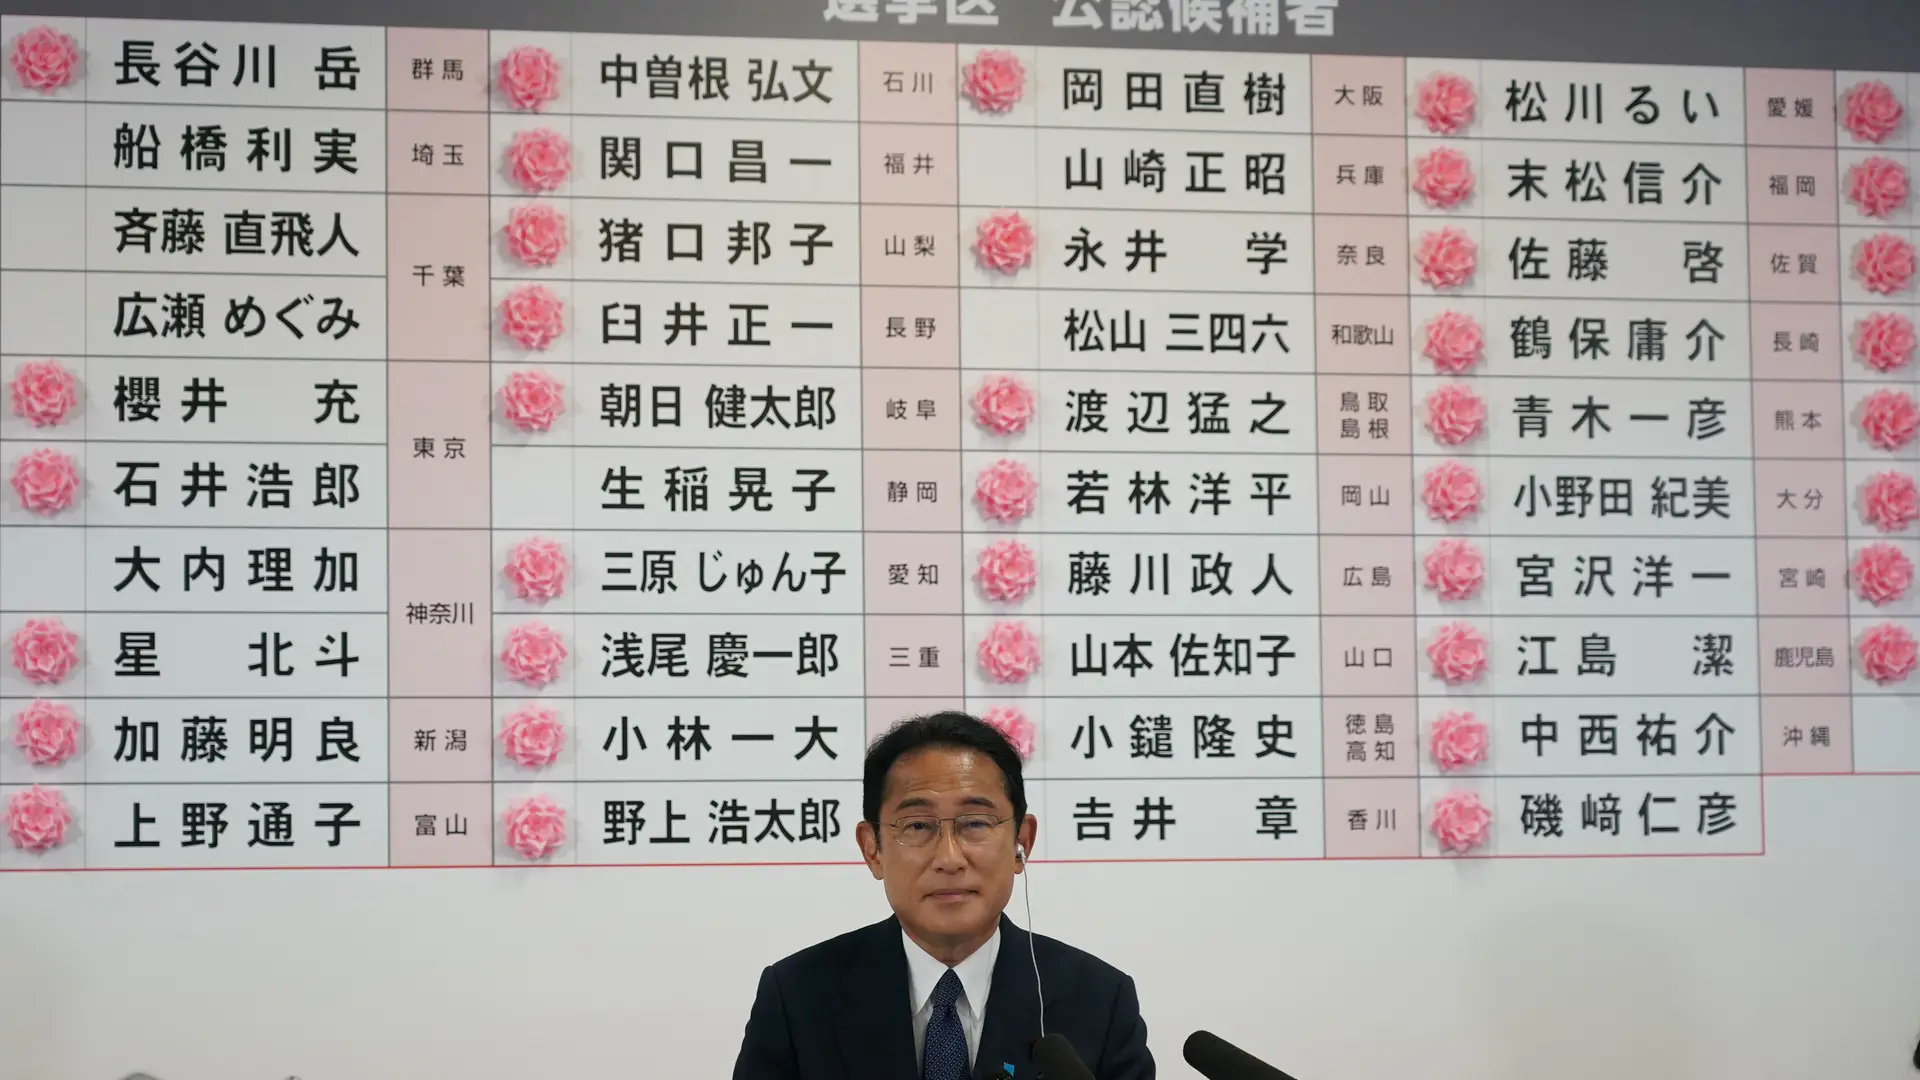 Na sede do Partido Liberal Democrático, em Tóquio, Fumio Kishida, primeiro-ministro e líder do partido, está junto a um quadro que assinala, com rosas de papel, os militantes eleitos para a câmara alta